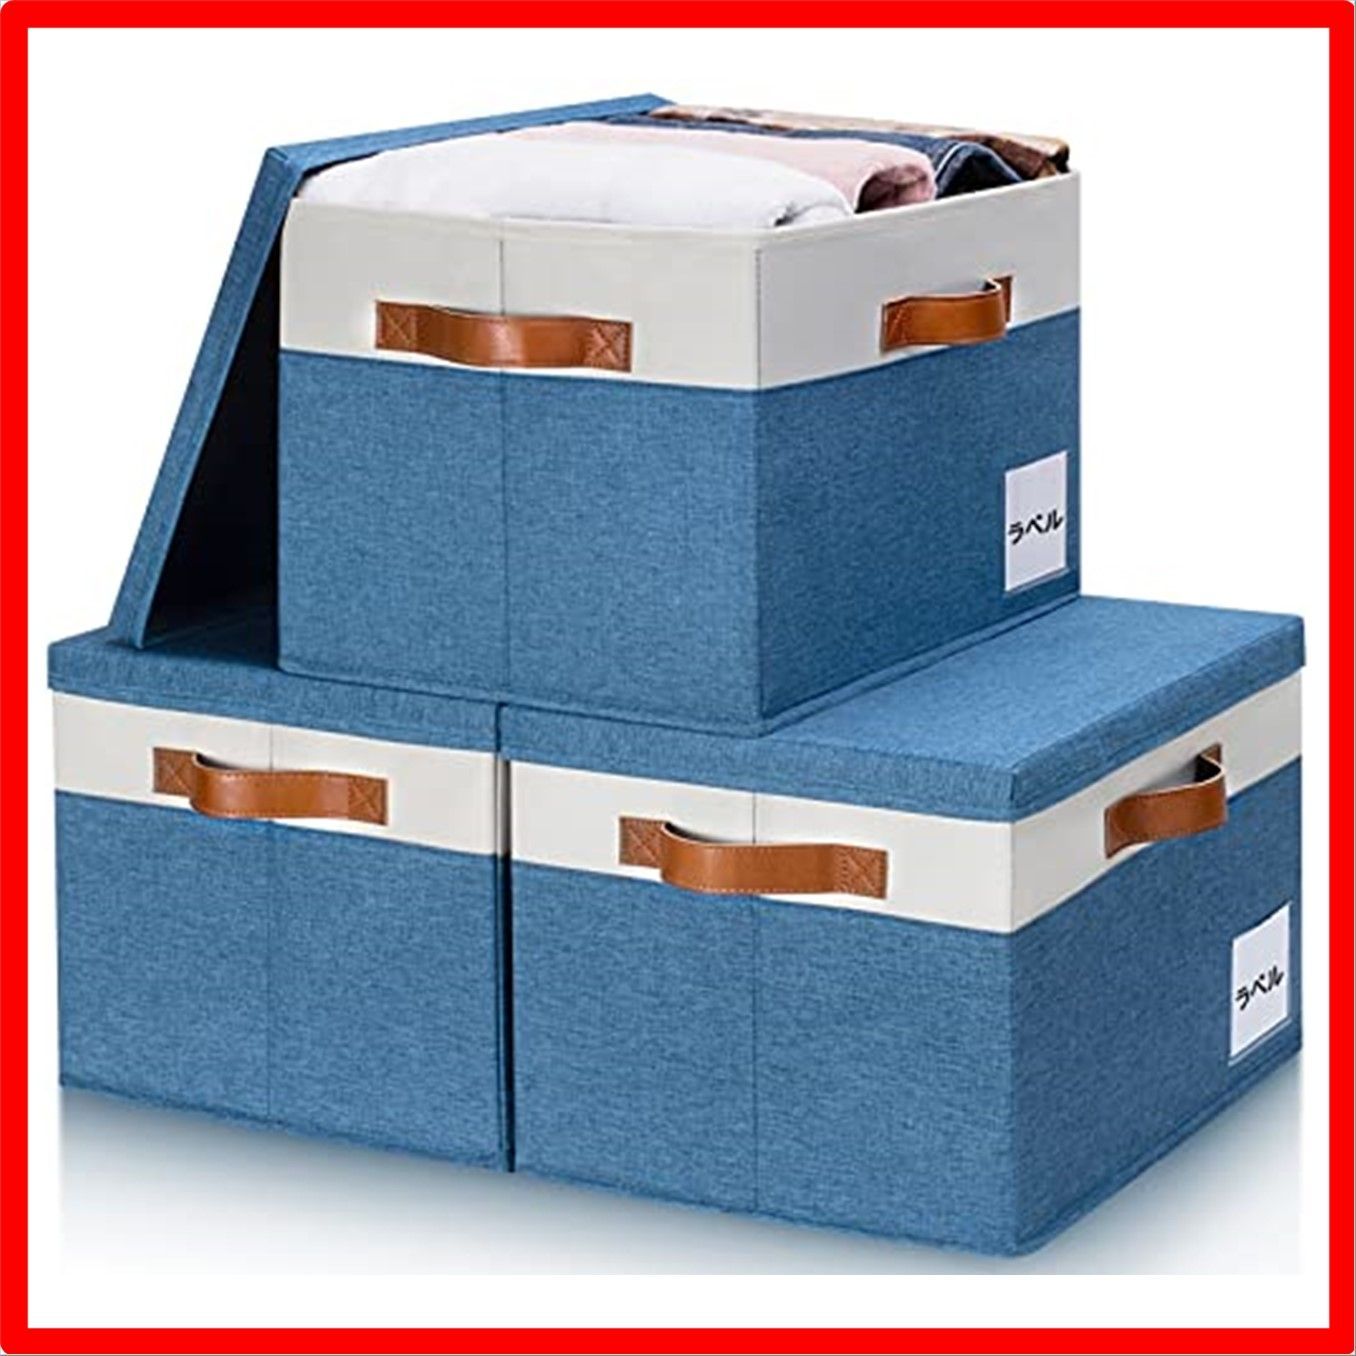 【送料無料】ブルーとホワイト_大きい - 38x28x24.7cm GhvyenntteS 収納ボックス ふた付き 収納ケース 3個セット 大容量  衣類収納ボッ